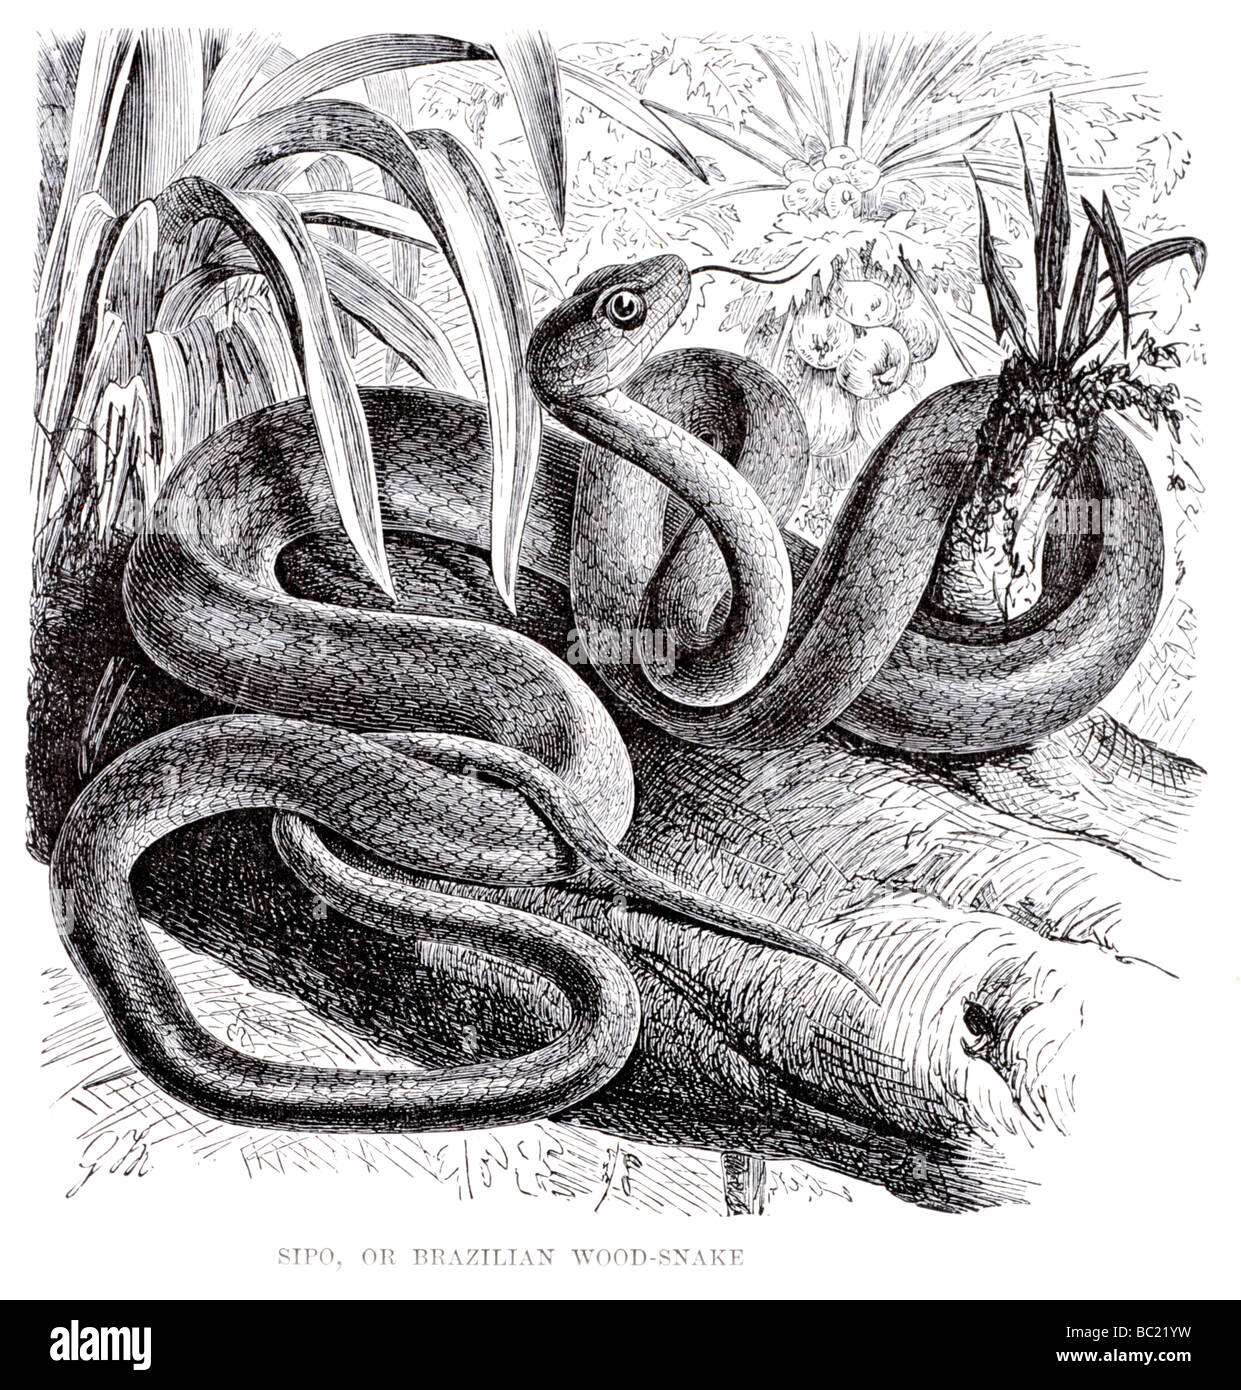 Sipo o serpiente de madera brasileña Foto de stock